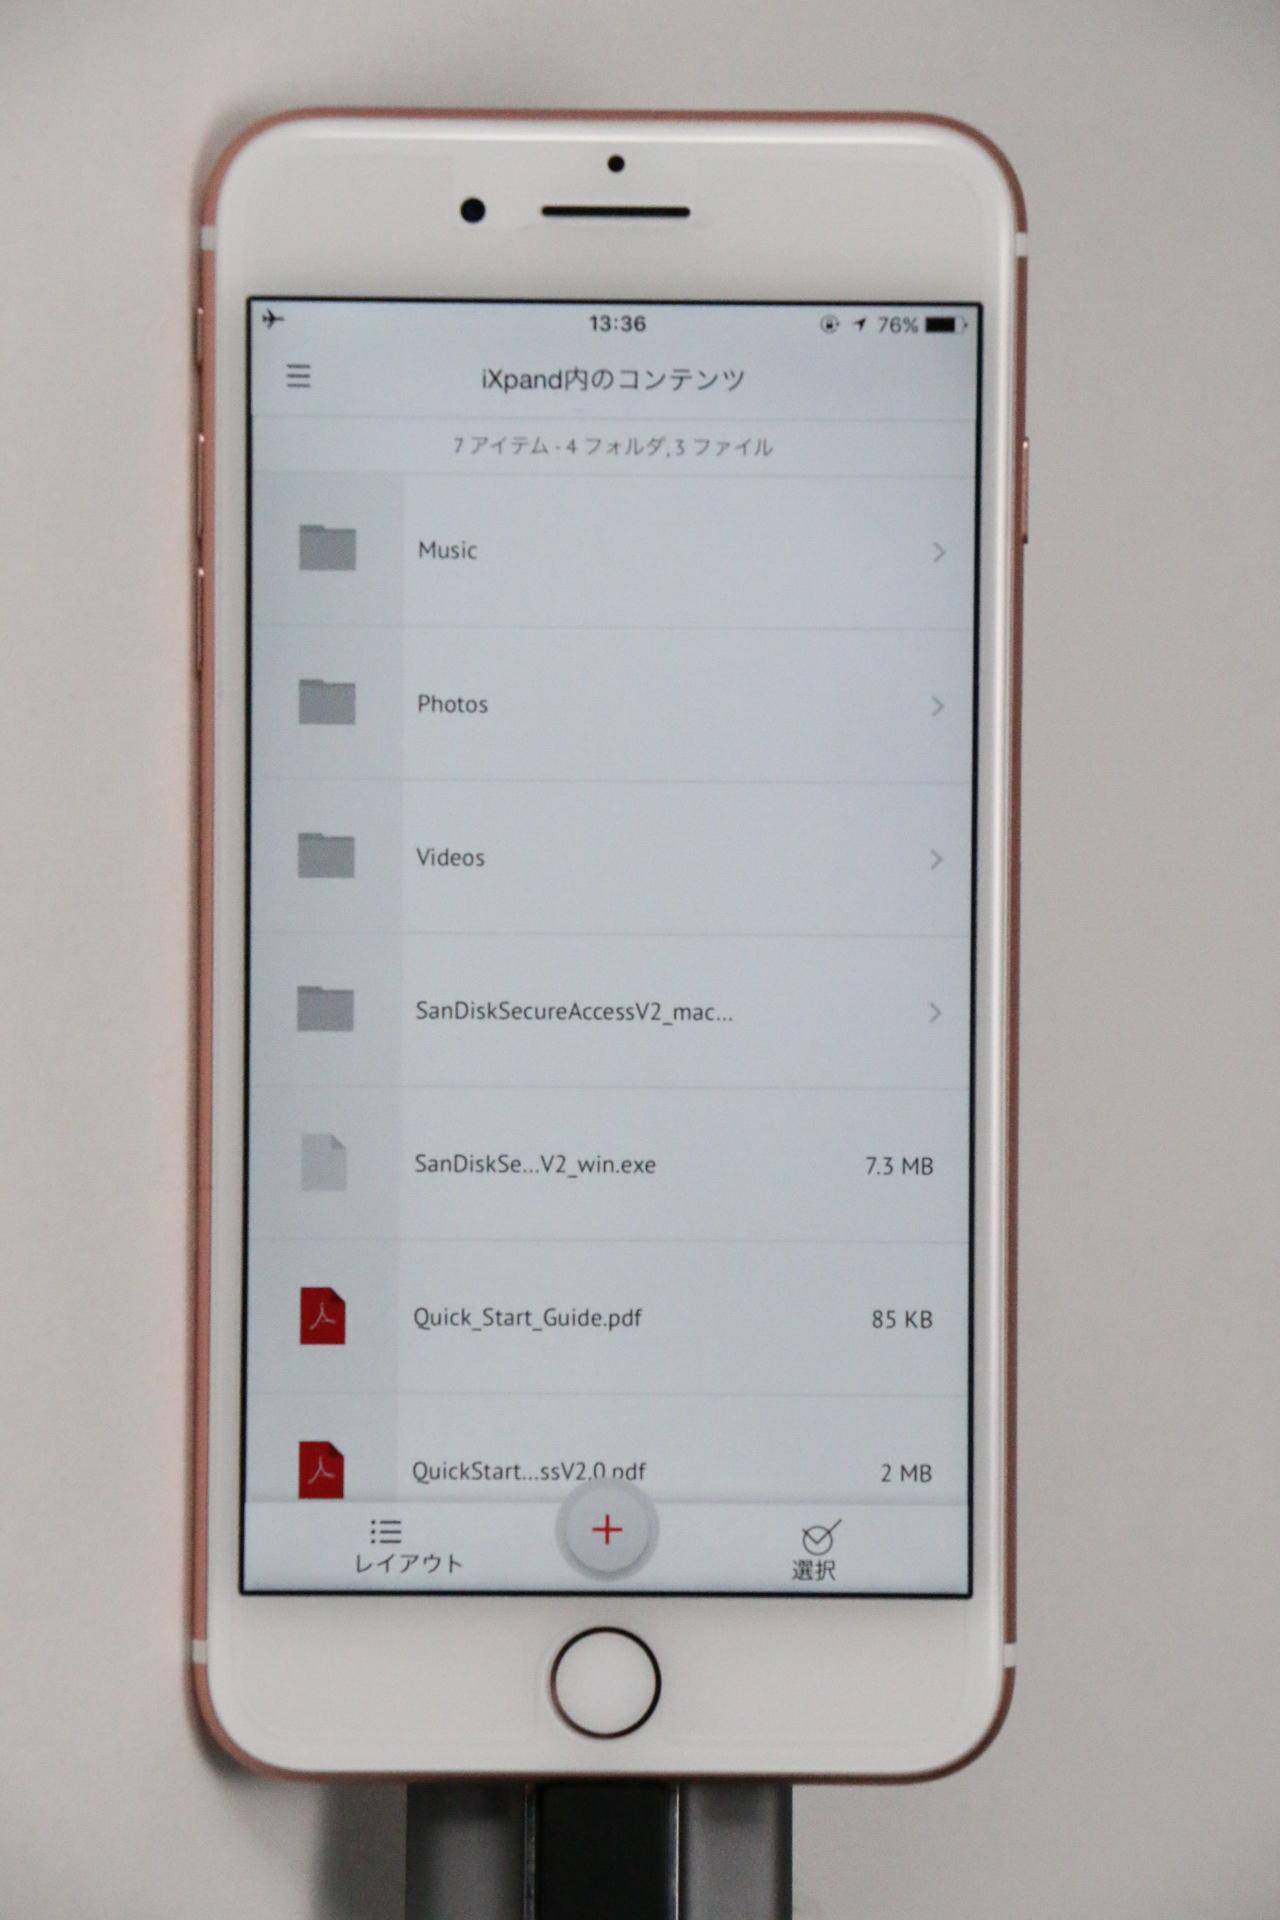 Iphone 7 Plusカメラ機能 写真 動画 の解説 Ixpandで簡単にデータを保存 サンディスク この瞬間を残したい